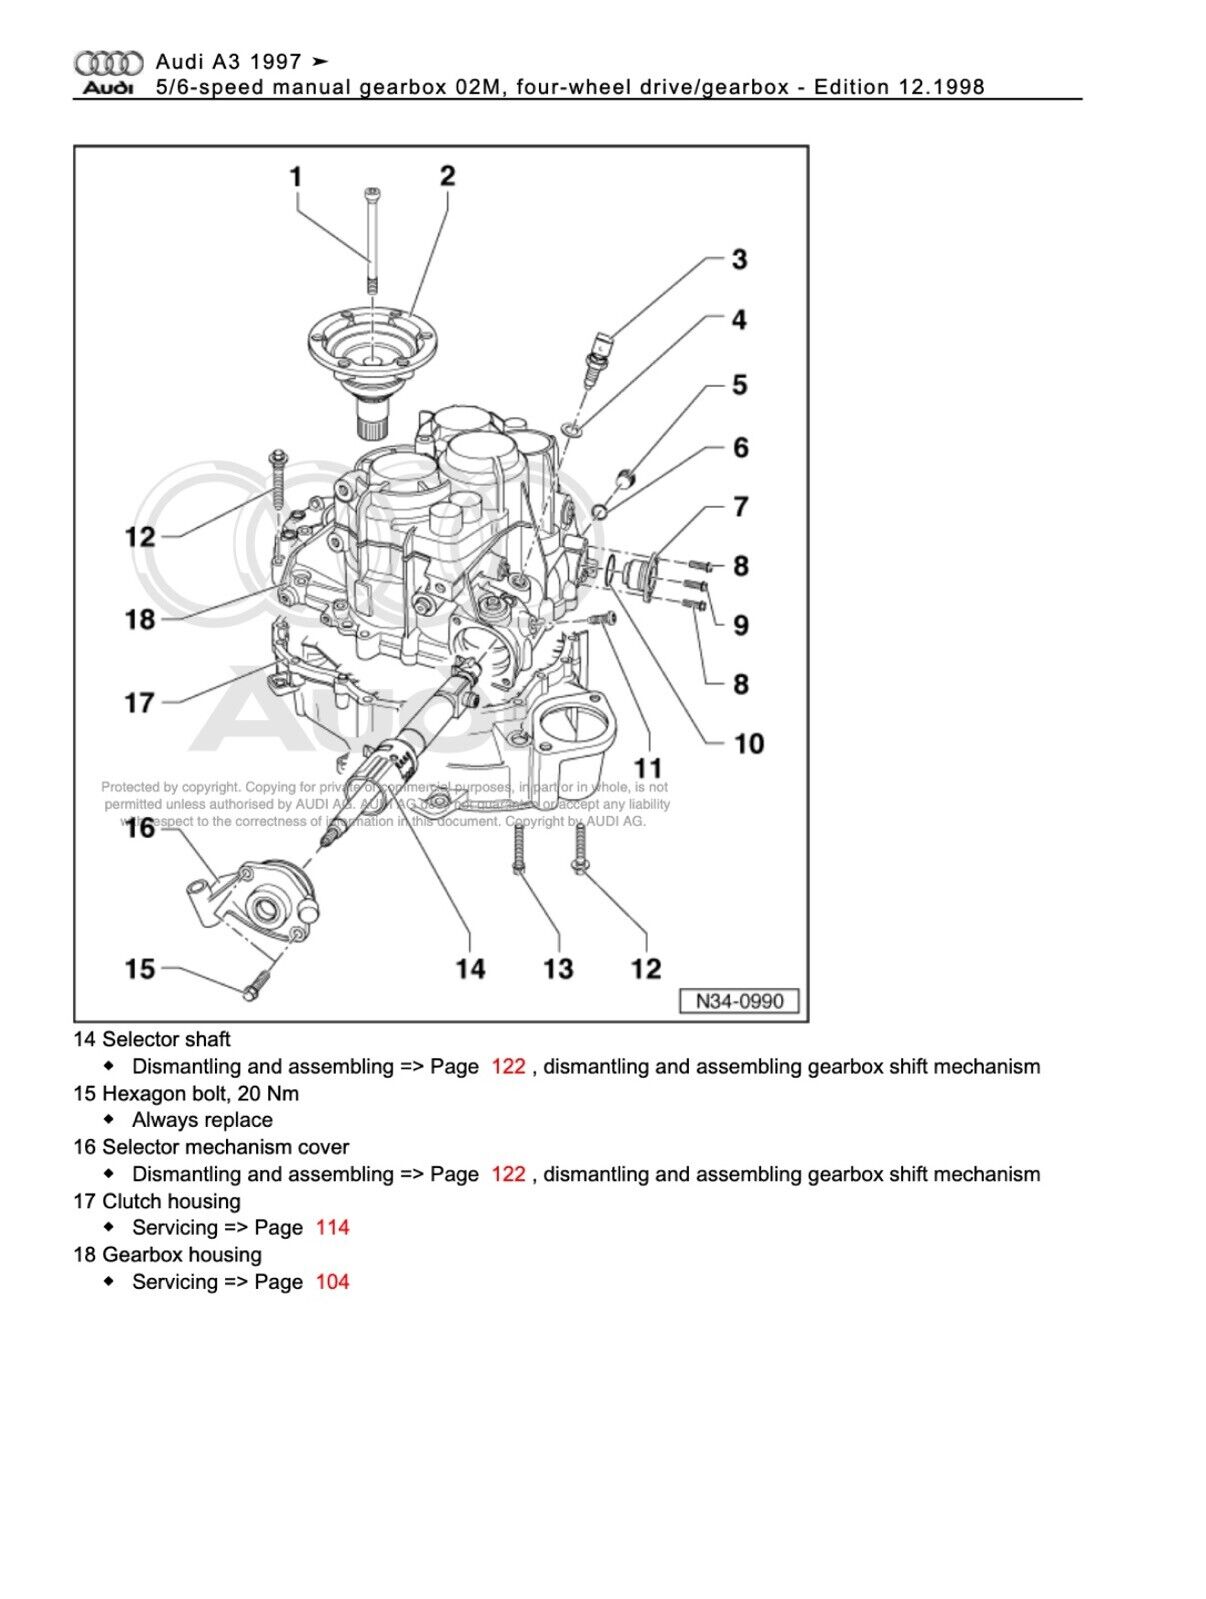 Audi A3 (8L) 1997-2003 repair manual